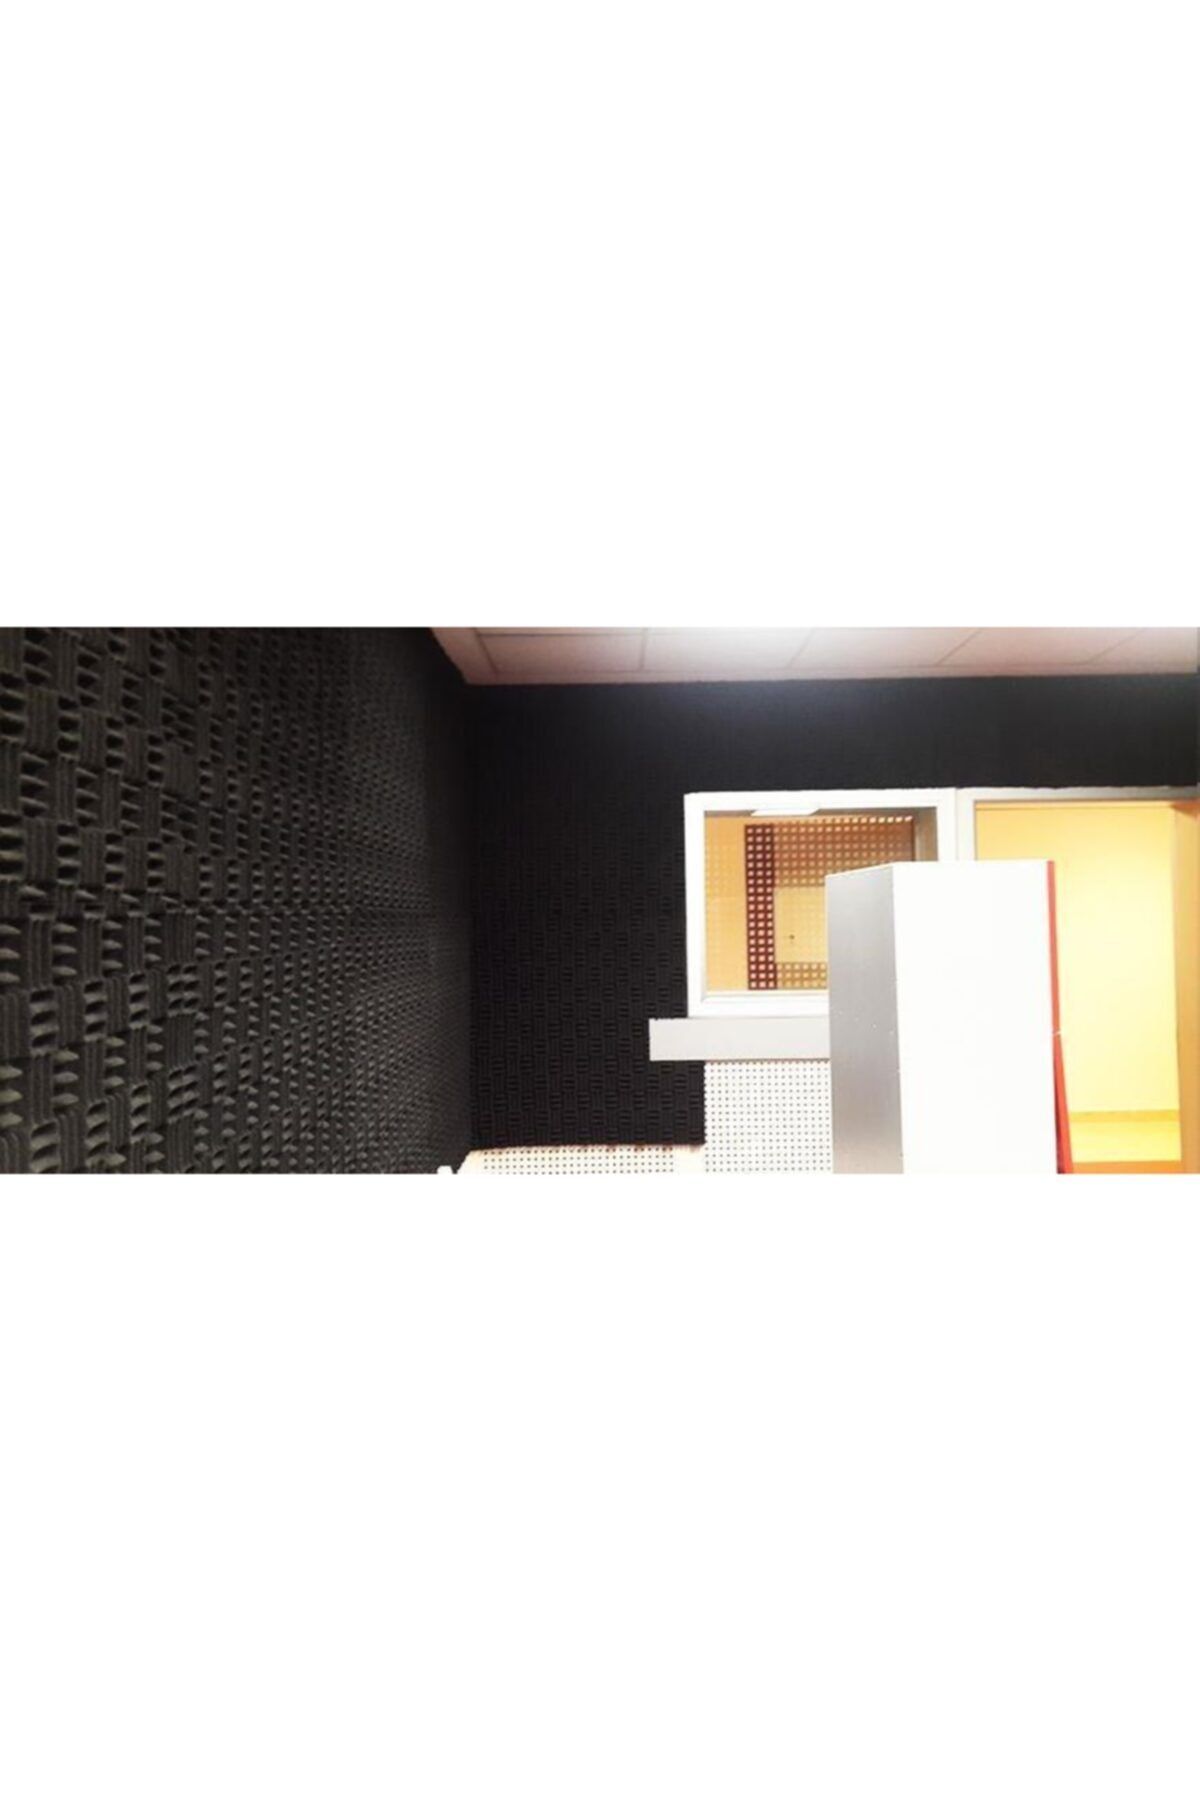 Eryapı Ebat (100x100) 30 mm Ses Yalıtımı Akustik Yanmaz Sünger